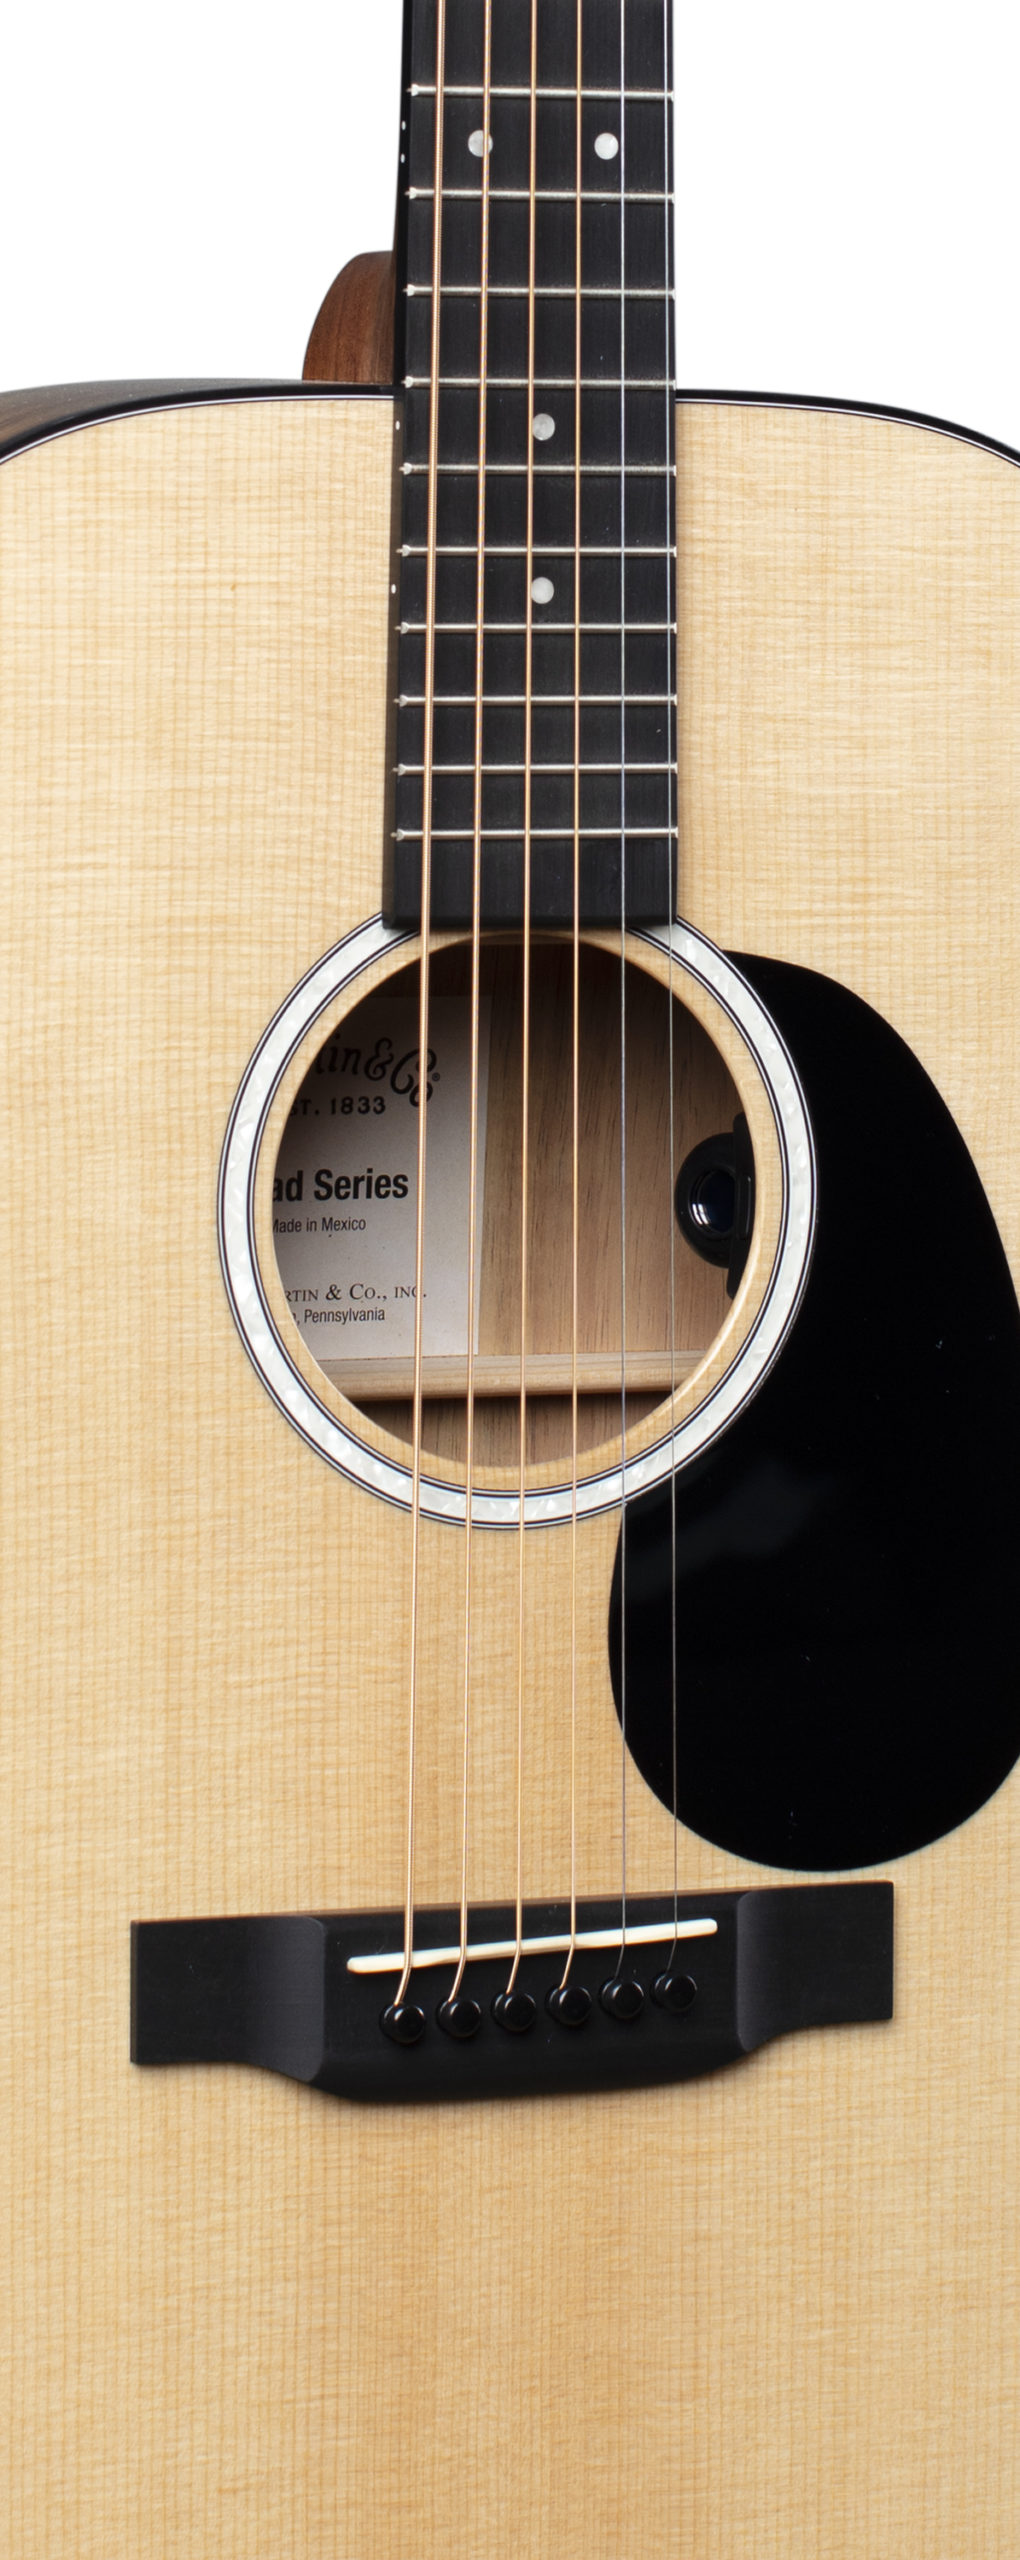 Martin 000-12E Koa Guitar